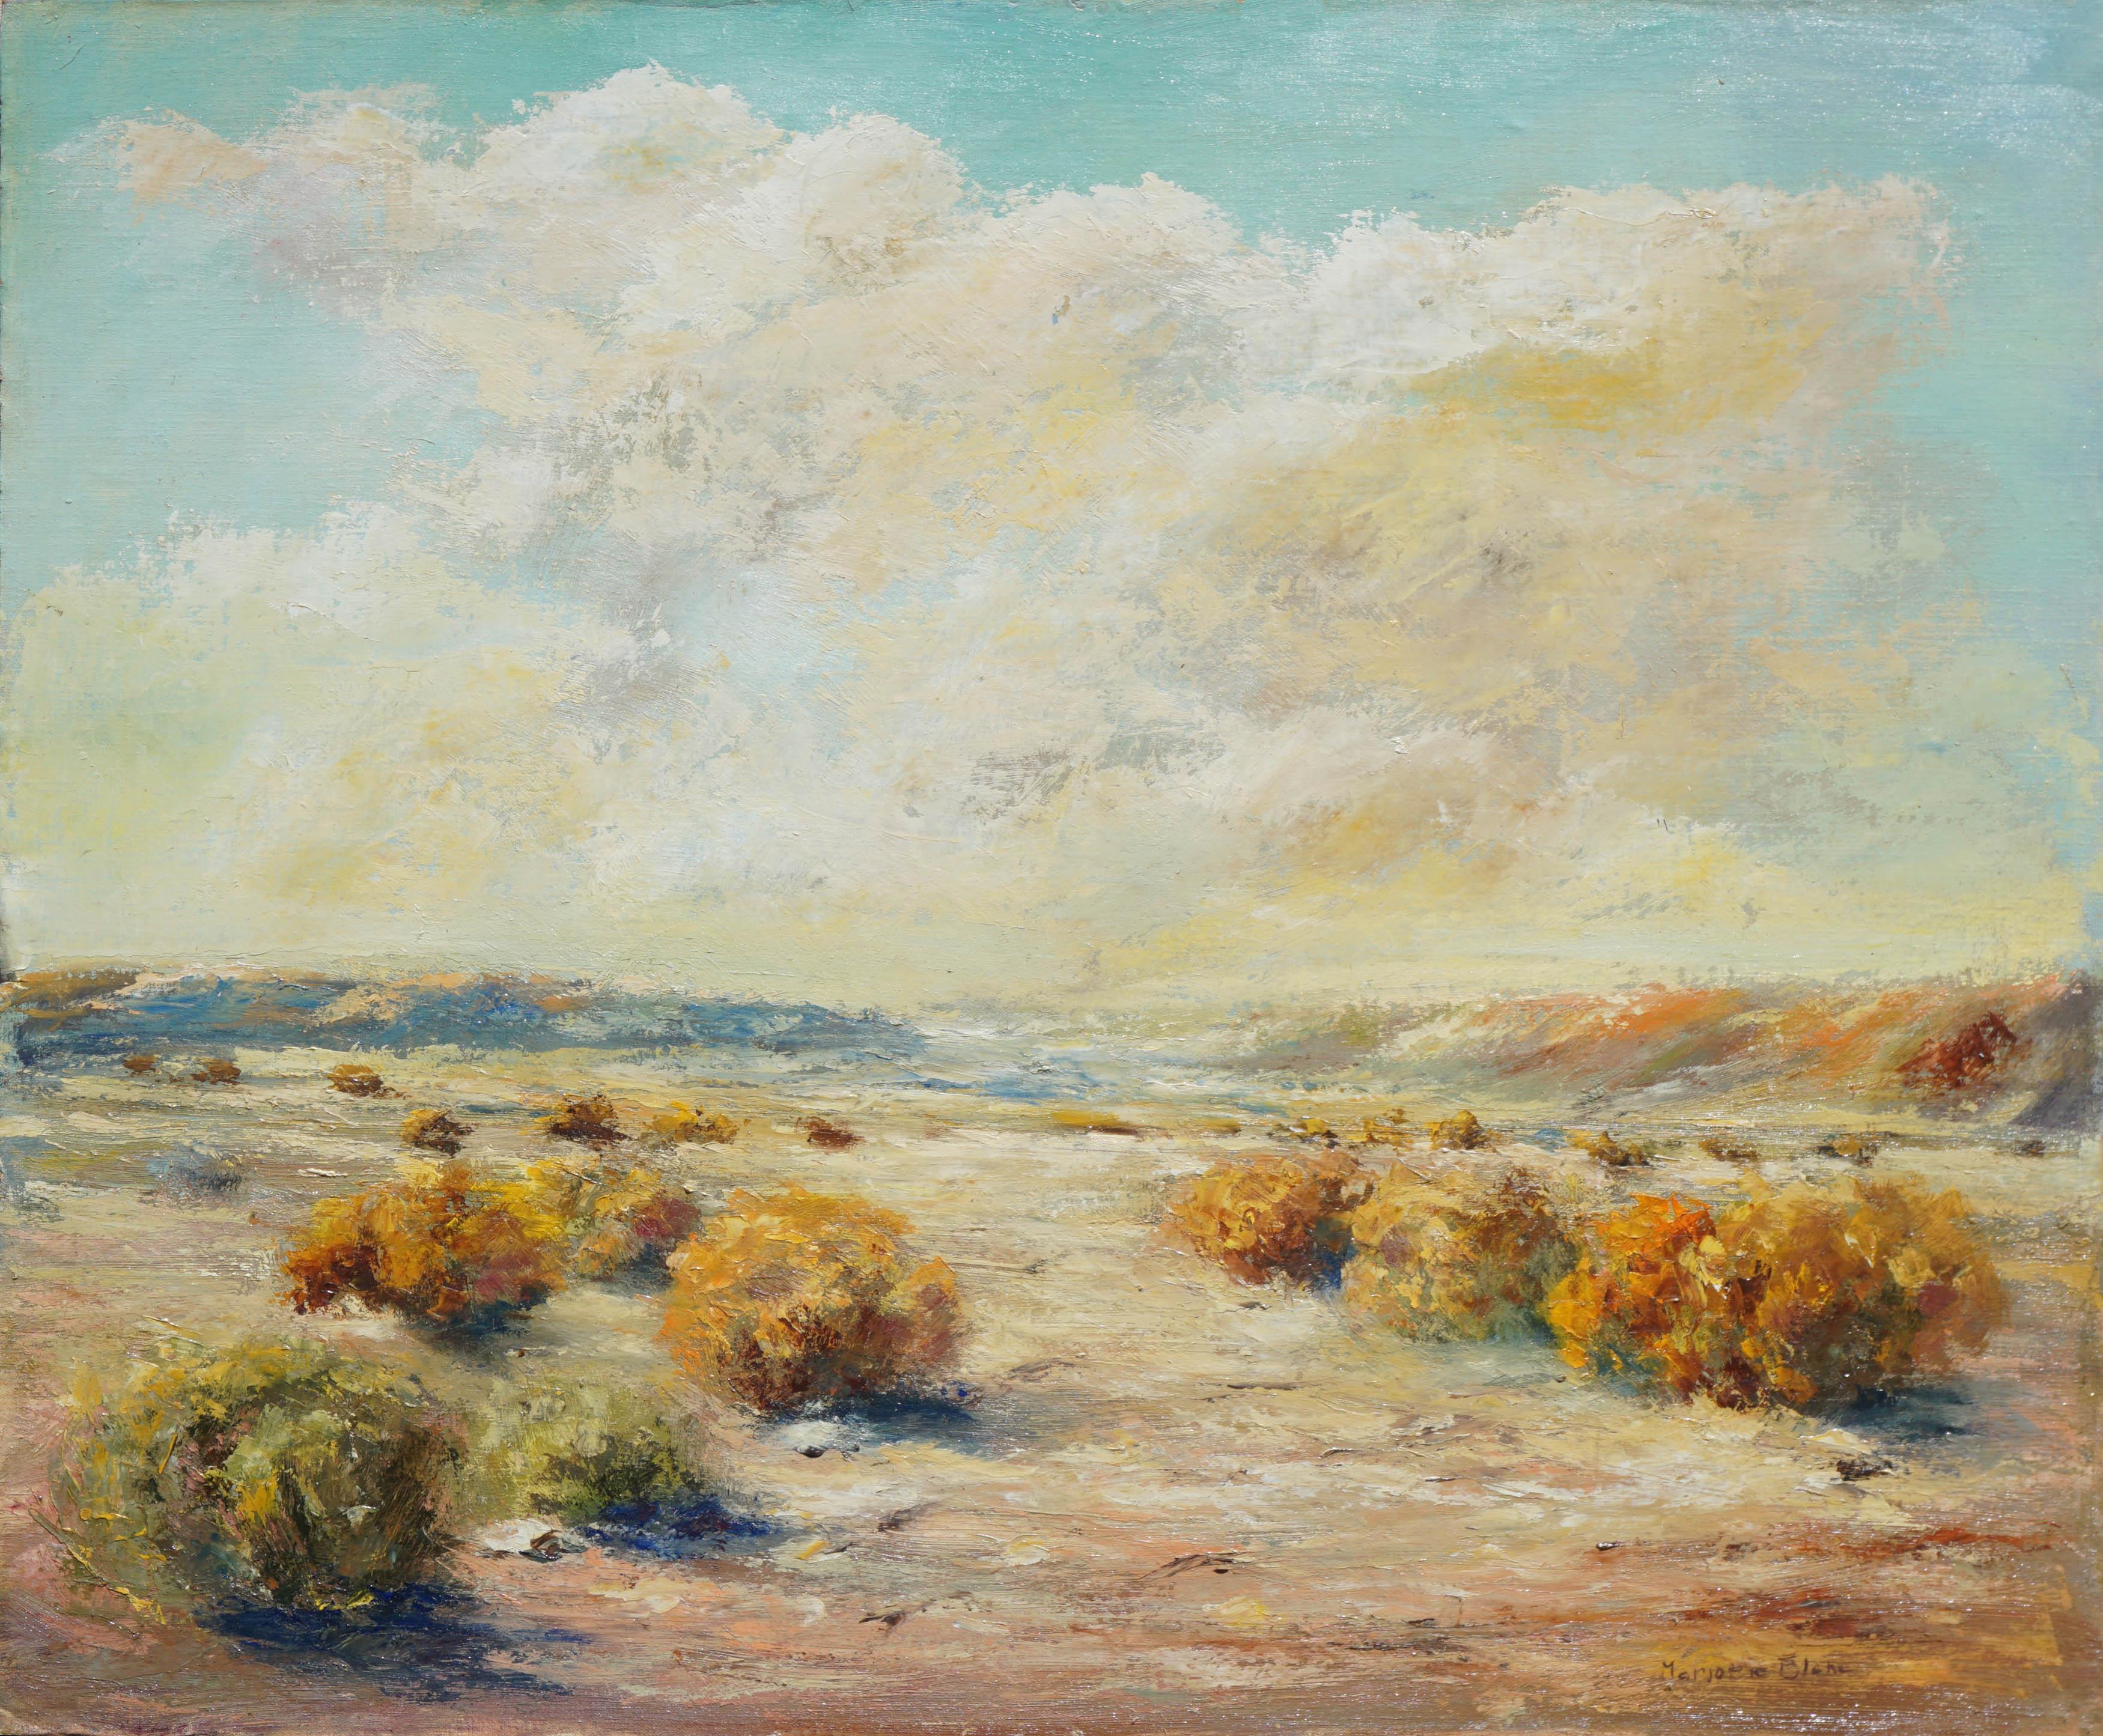 Marjorie May Blake Landscape Painting – Palm Springs Kalifornien Wüstenlandschaft aus der Mitte des Jahrhunderts 1960er Jahre